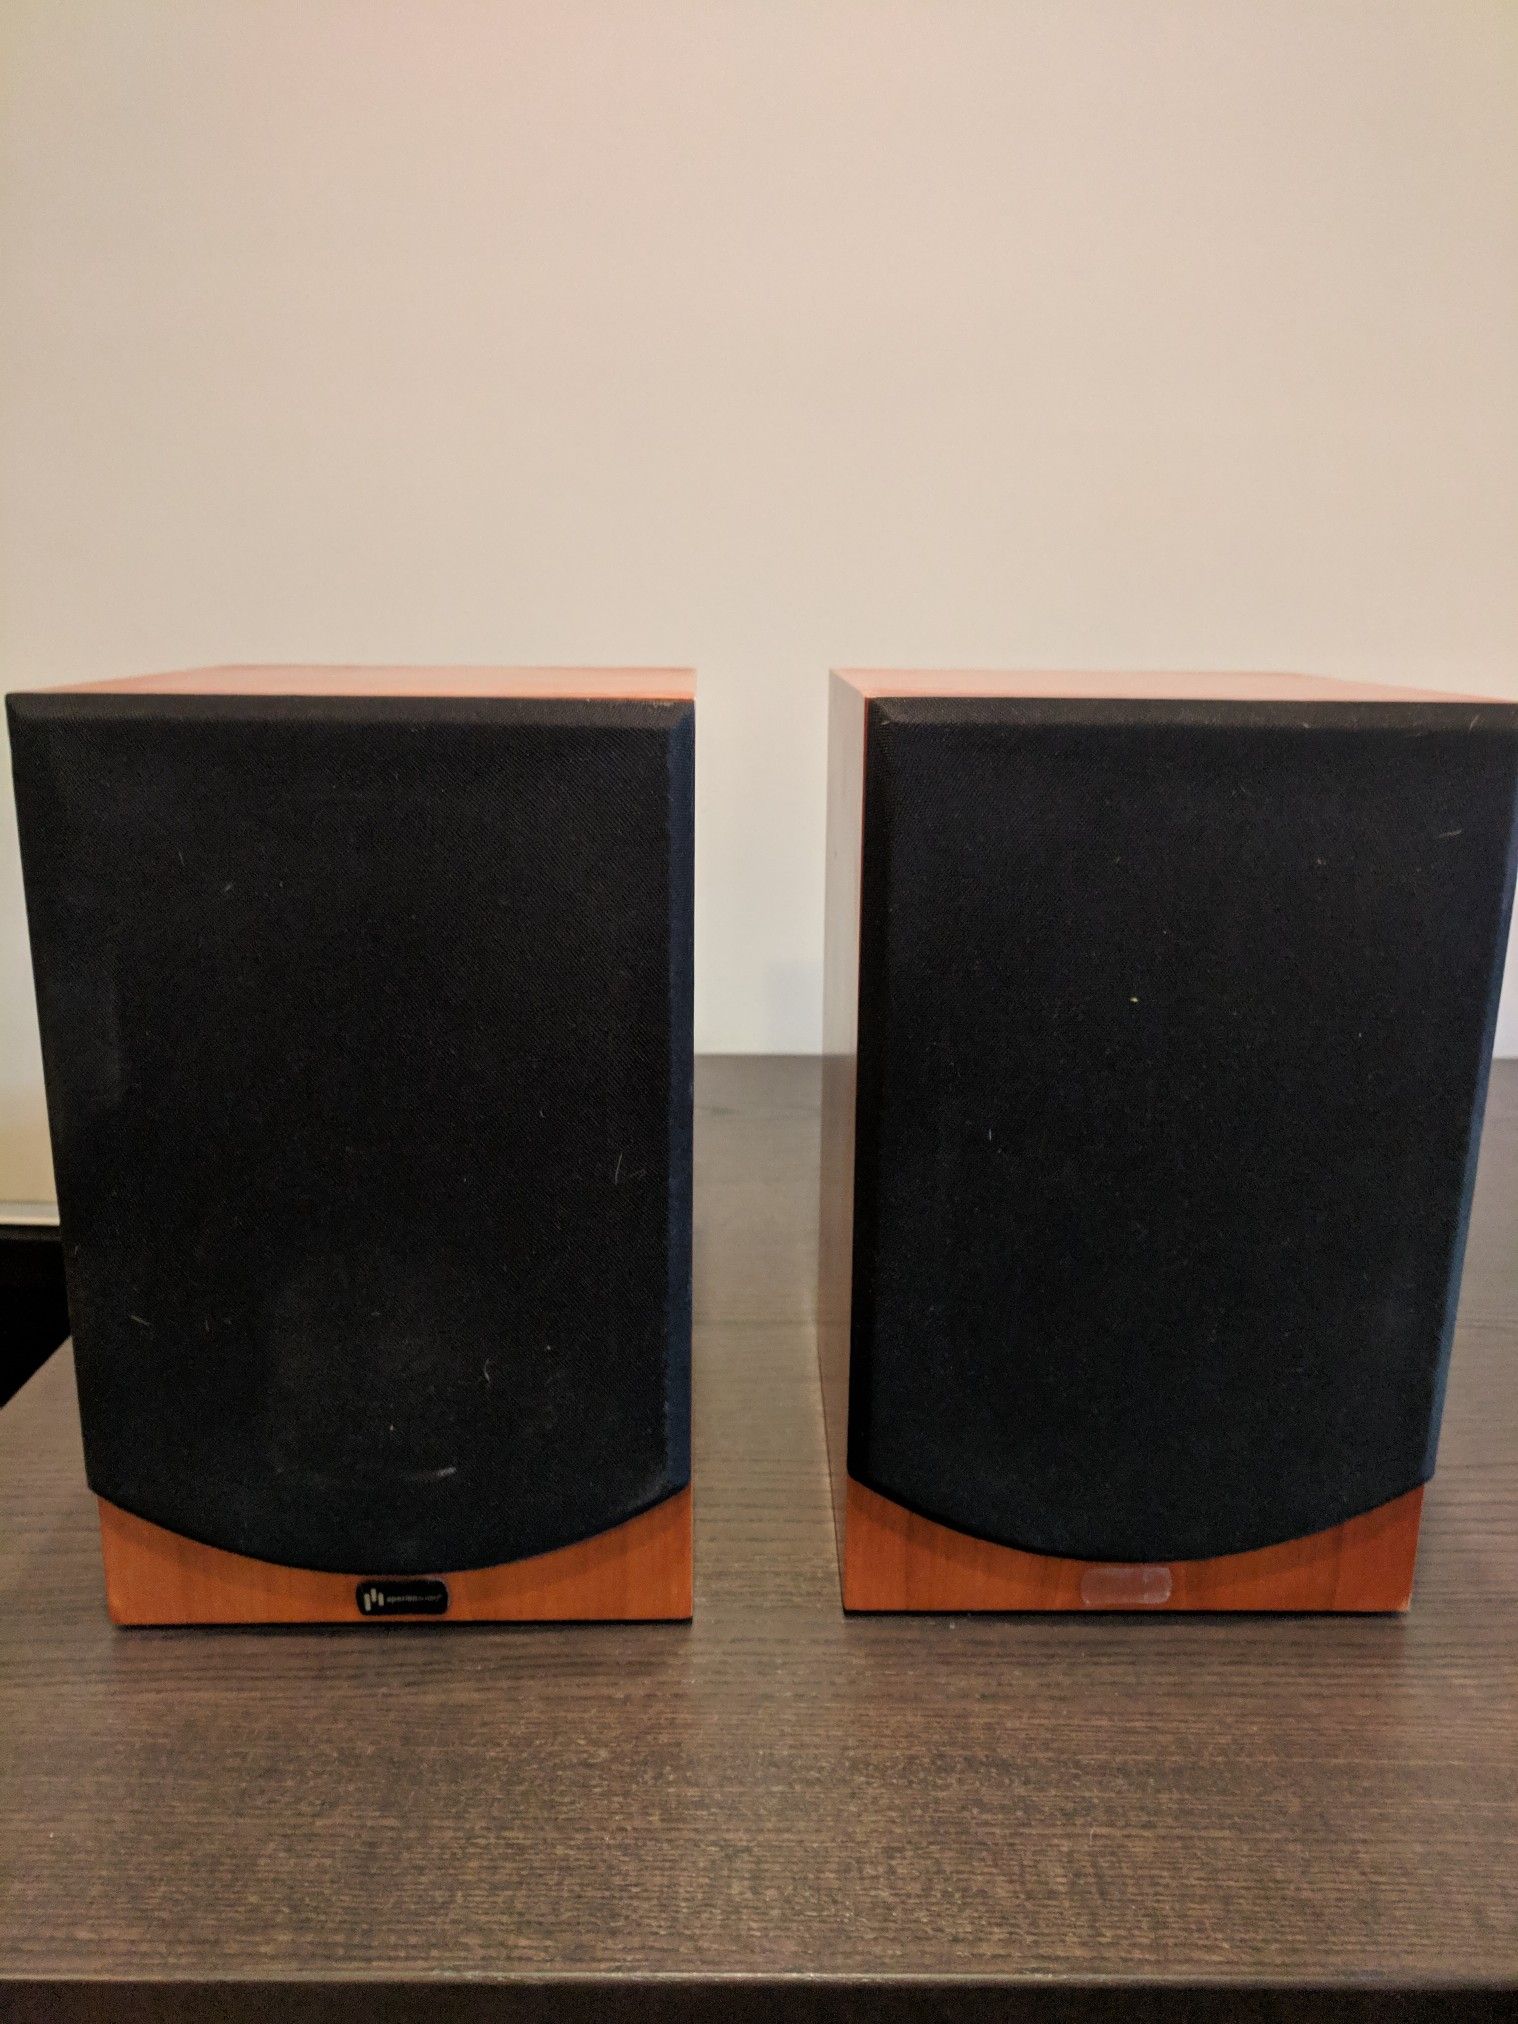 Aperion Audio speakers